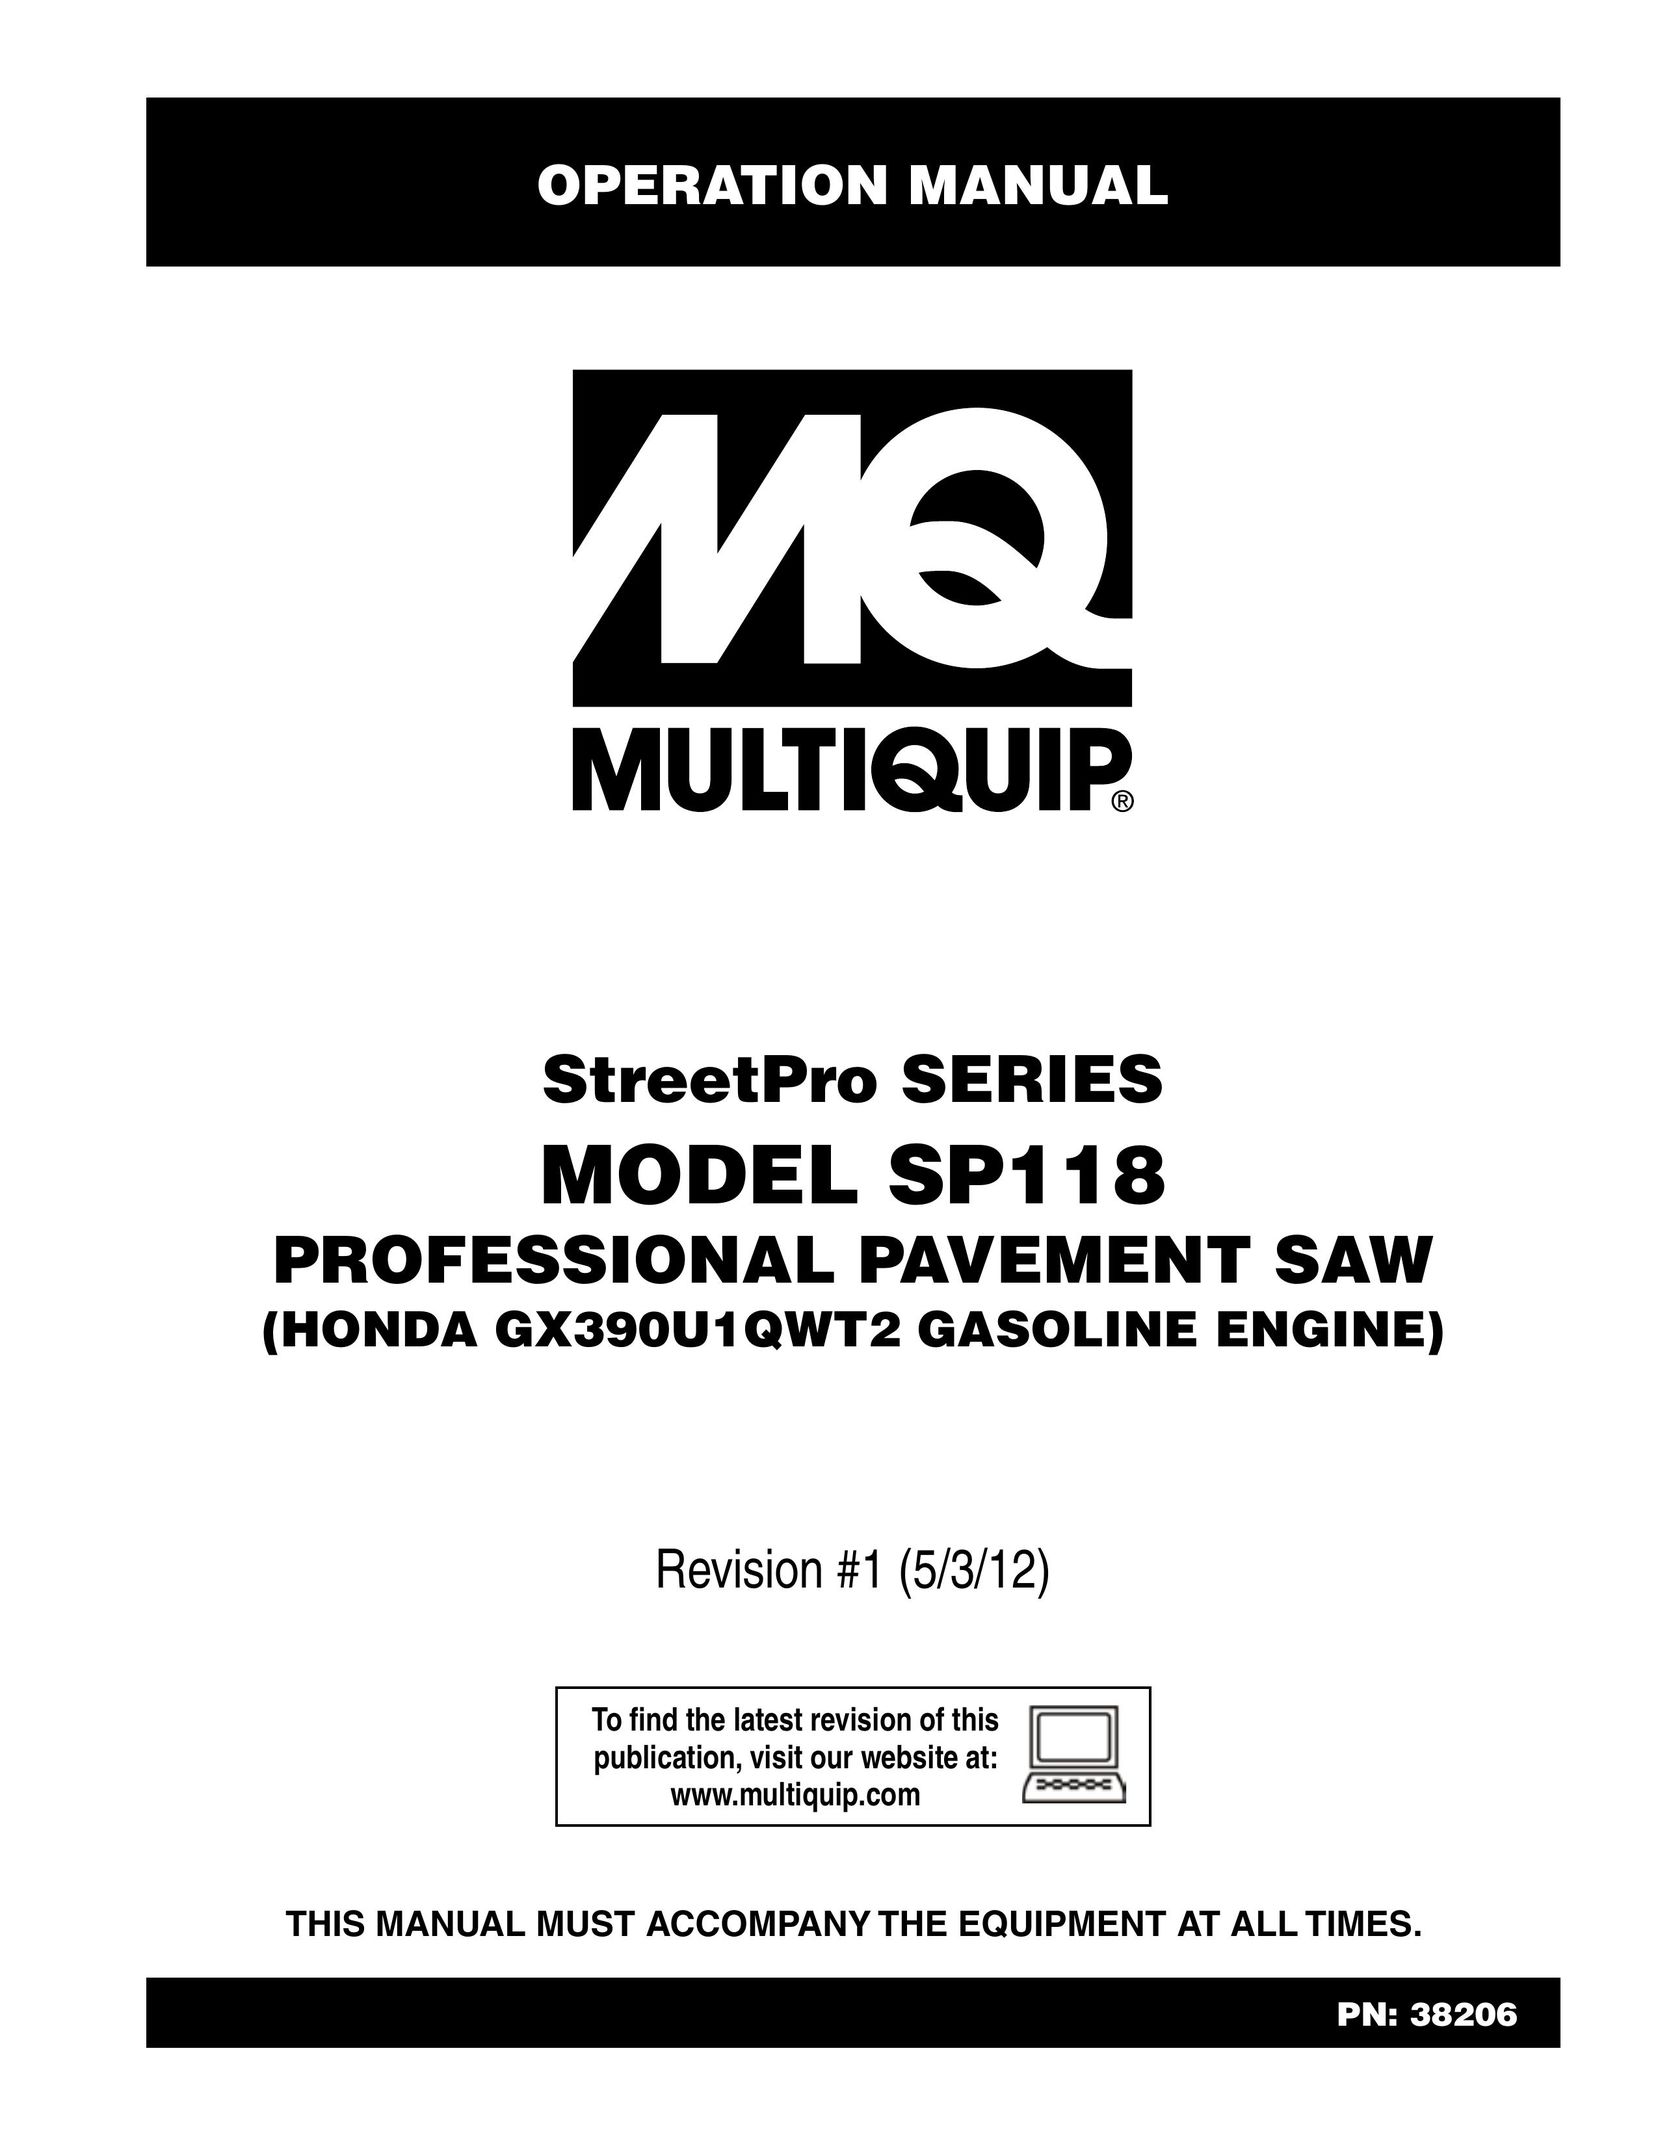 Multiquip SP118 Saw User Manual